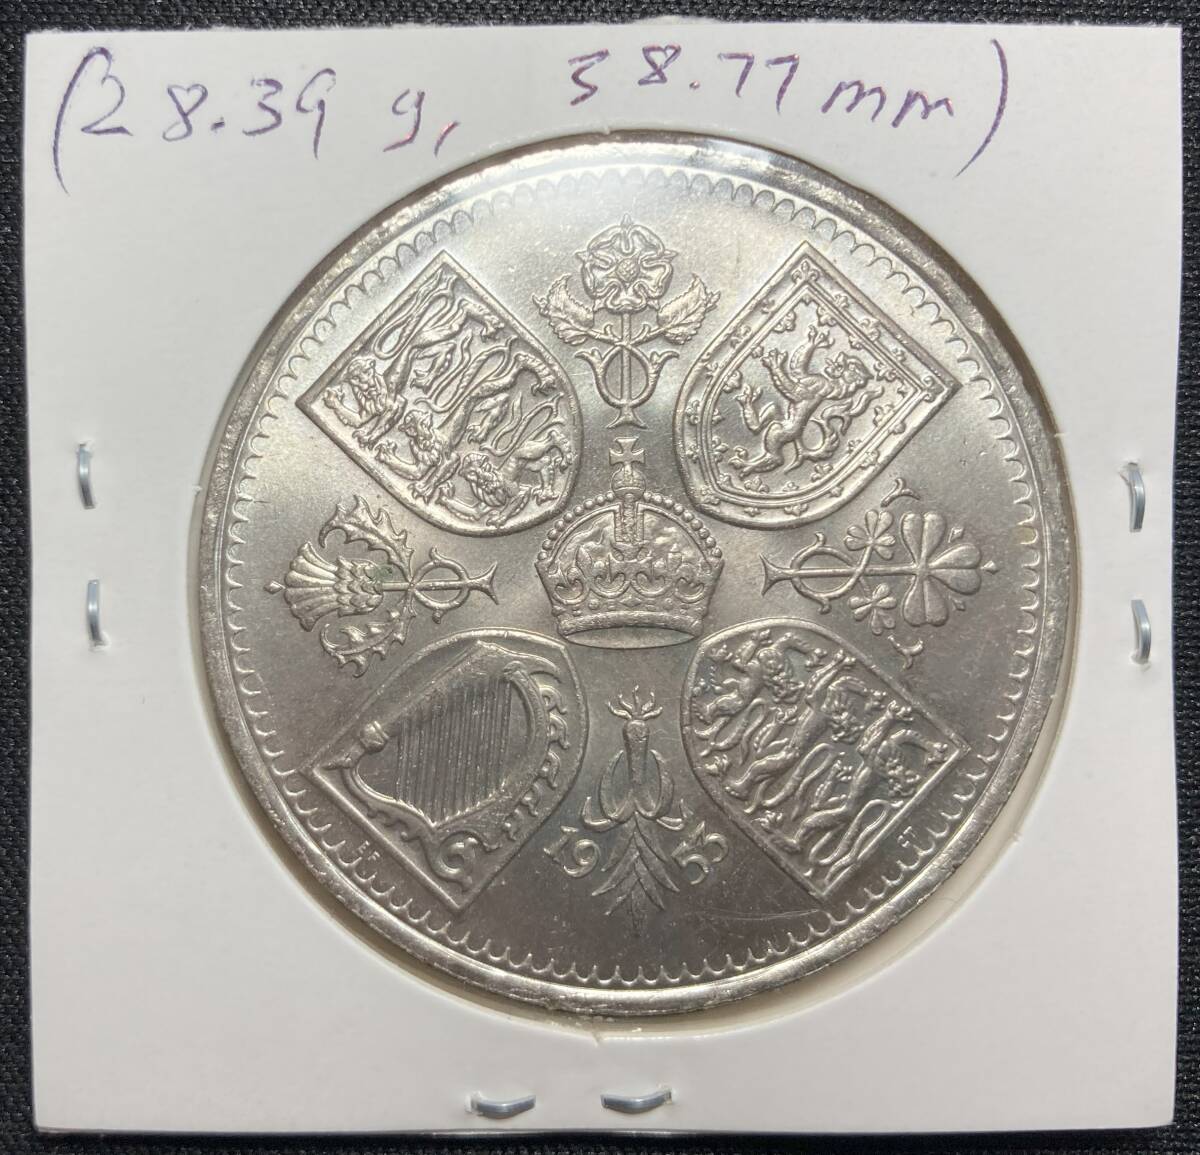 １円スタート! ・イギリス 1クラウン 1953 エリザベス2世 戴冠式 (シルバージュビリー) 白銅貨・アンティーク コインの画像7